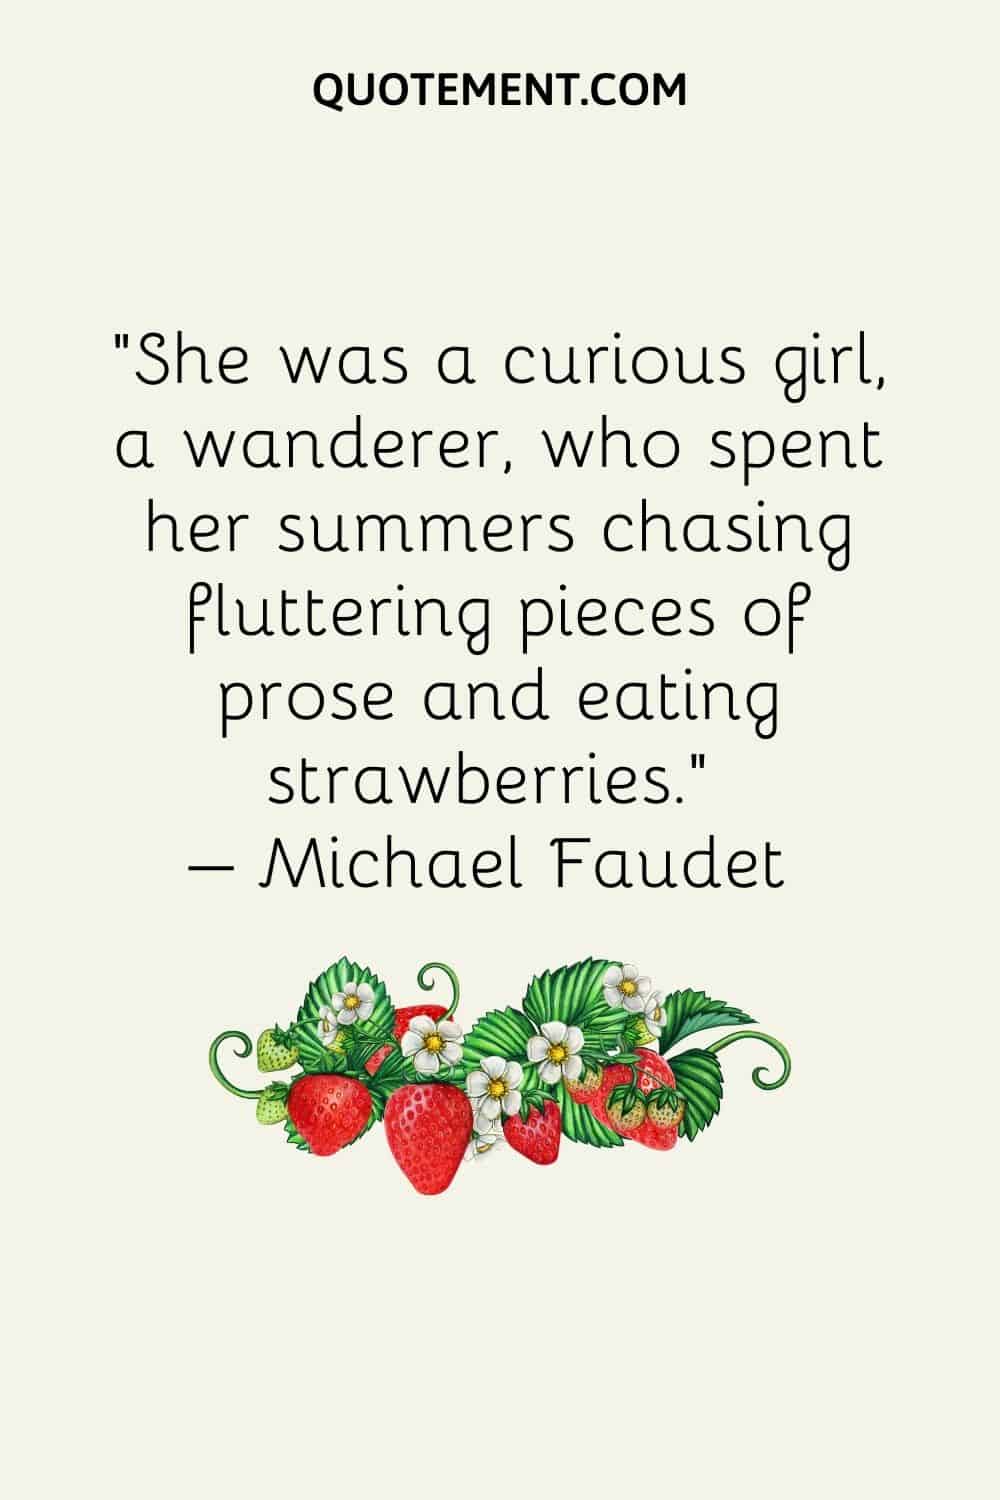 Era una niña curiosa, vagabunda, que pasaba los veranos persiguiendo trozos de prosa que revoloteaban y comiendo fresas...